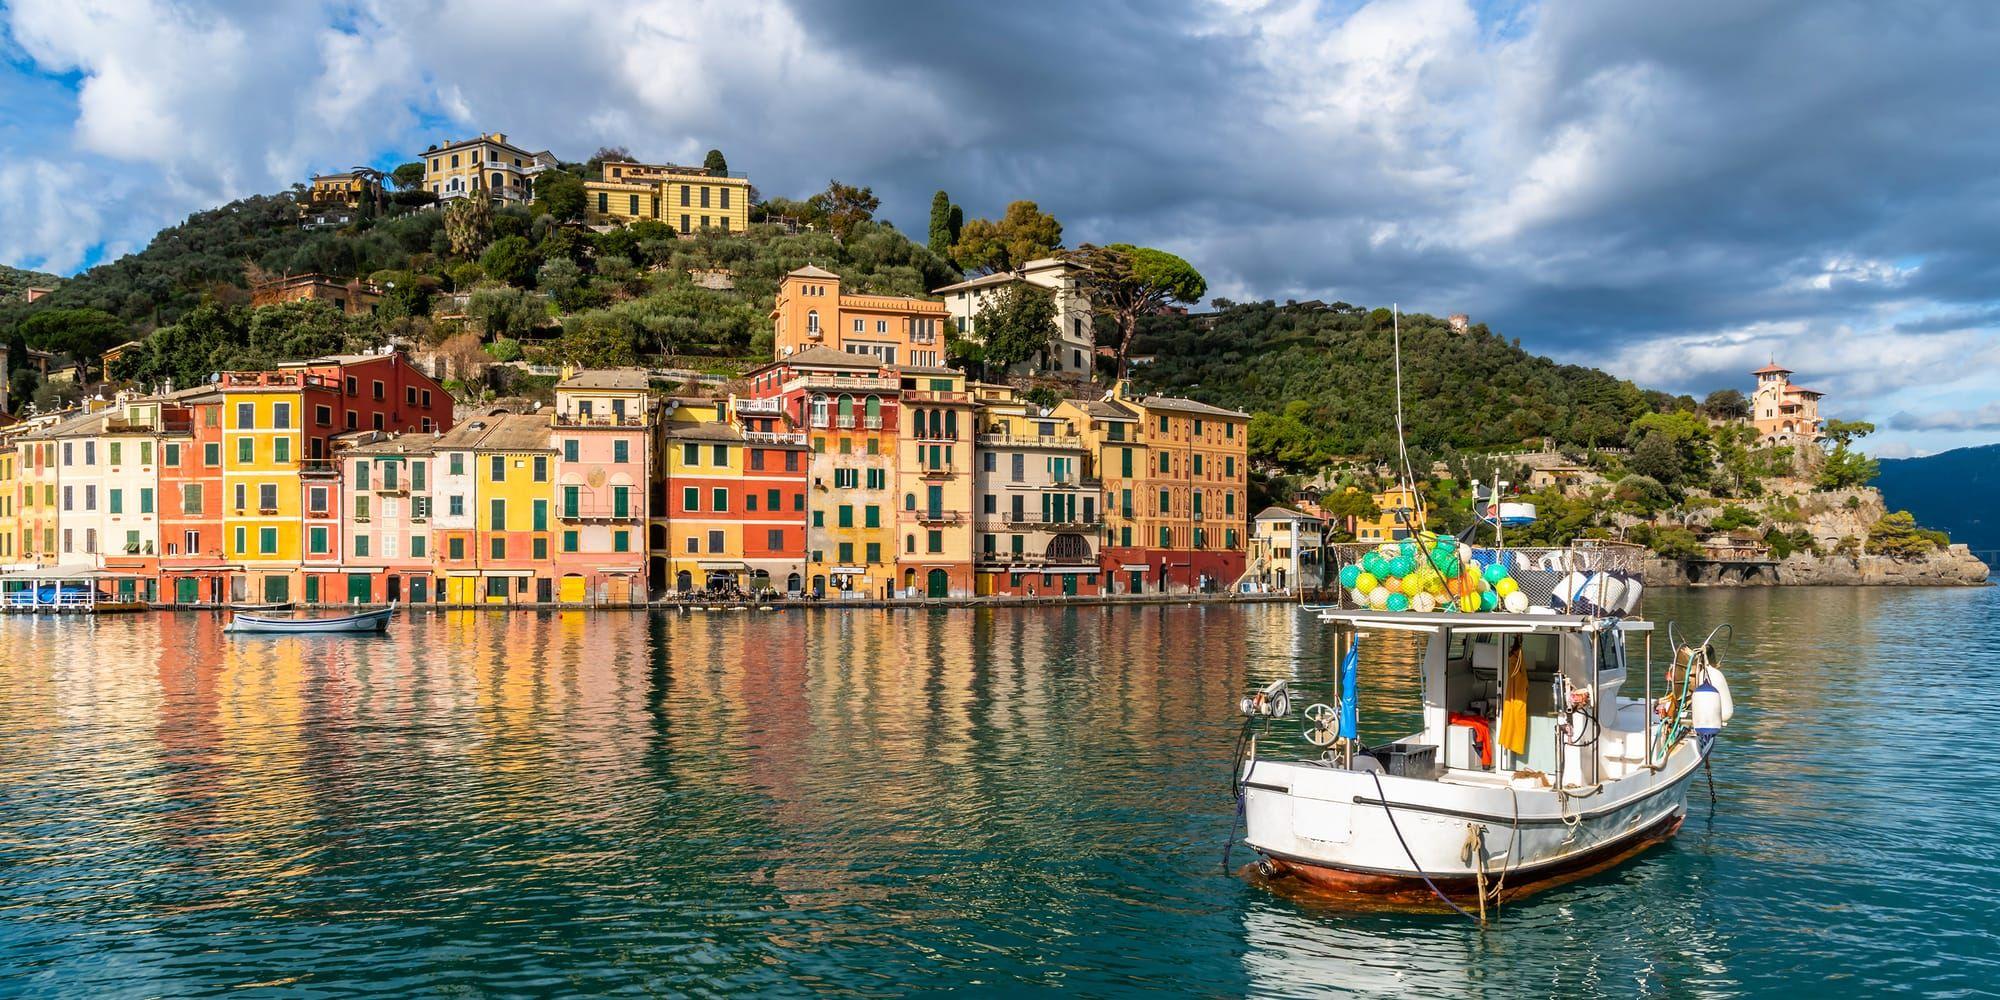 
    Staden Portofino har blivit berömd för sina charmiga hus med gröna fönsterluckor.
   